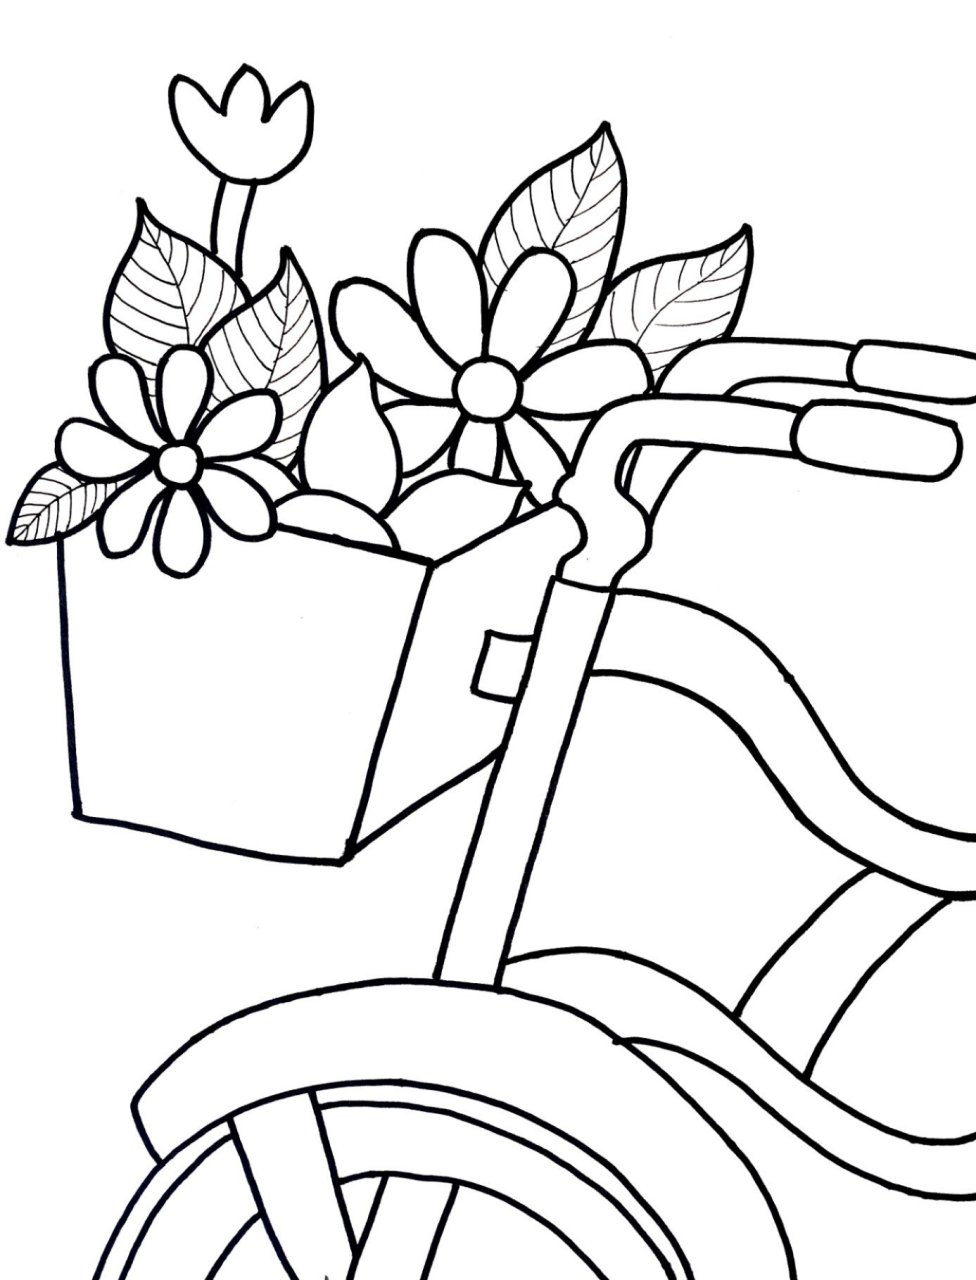 自行车筐简笔画图片